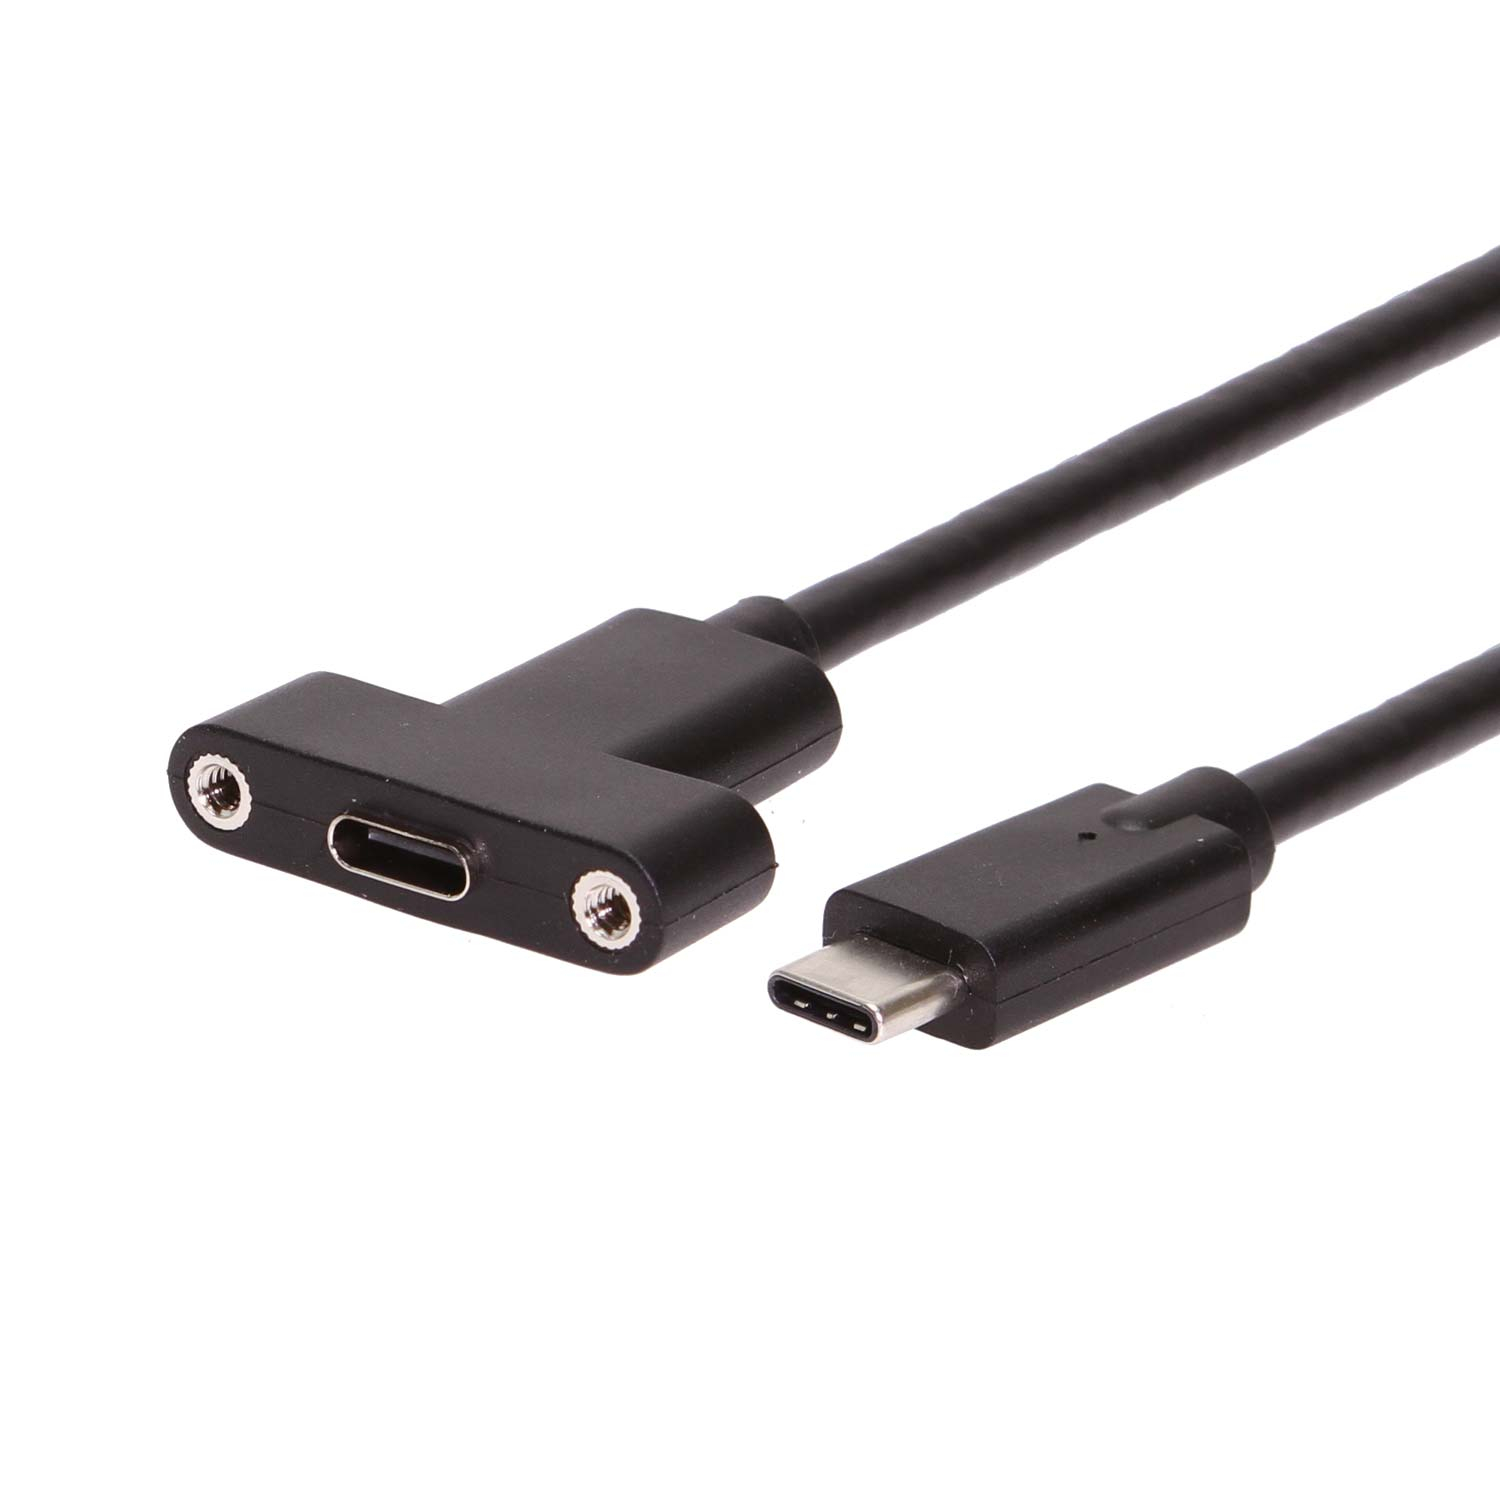 gård at tilføje mængde af salg USB 3.2 Gen 2 Type-C Male to Female High Quality Panel Mount Cable 36 inch